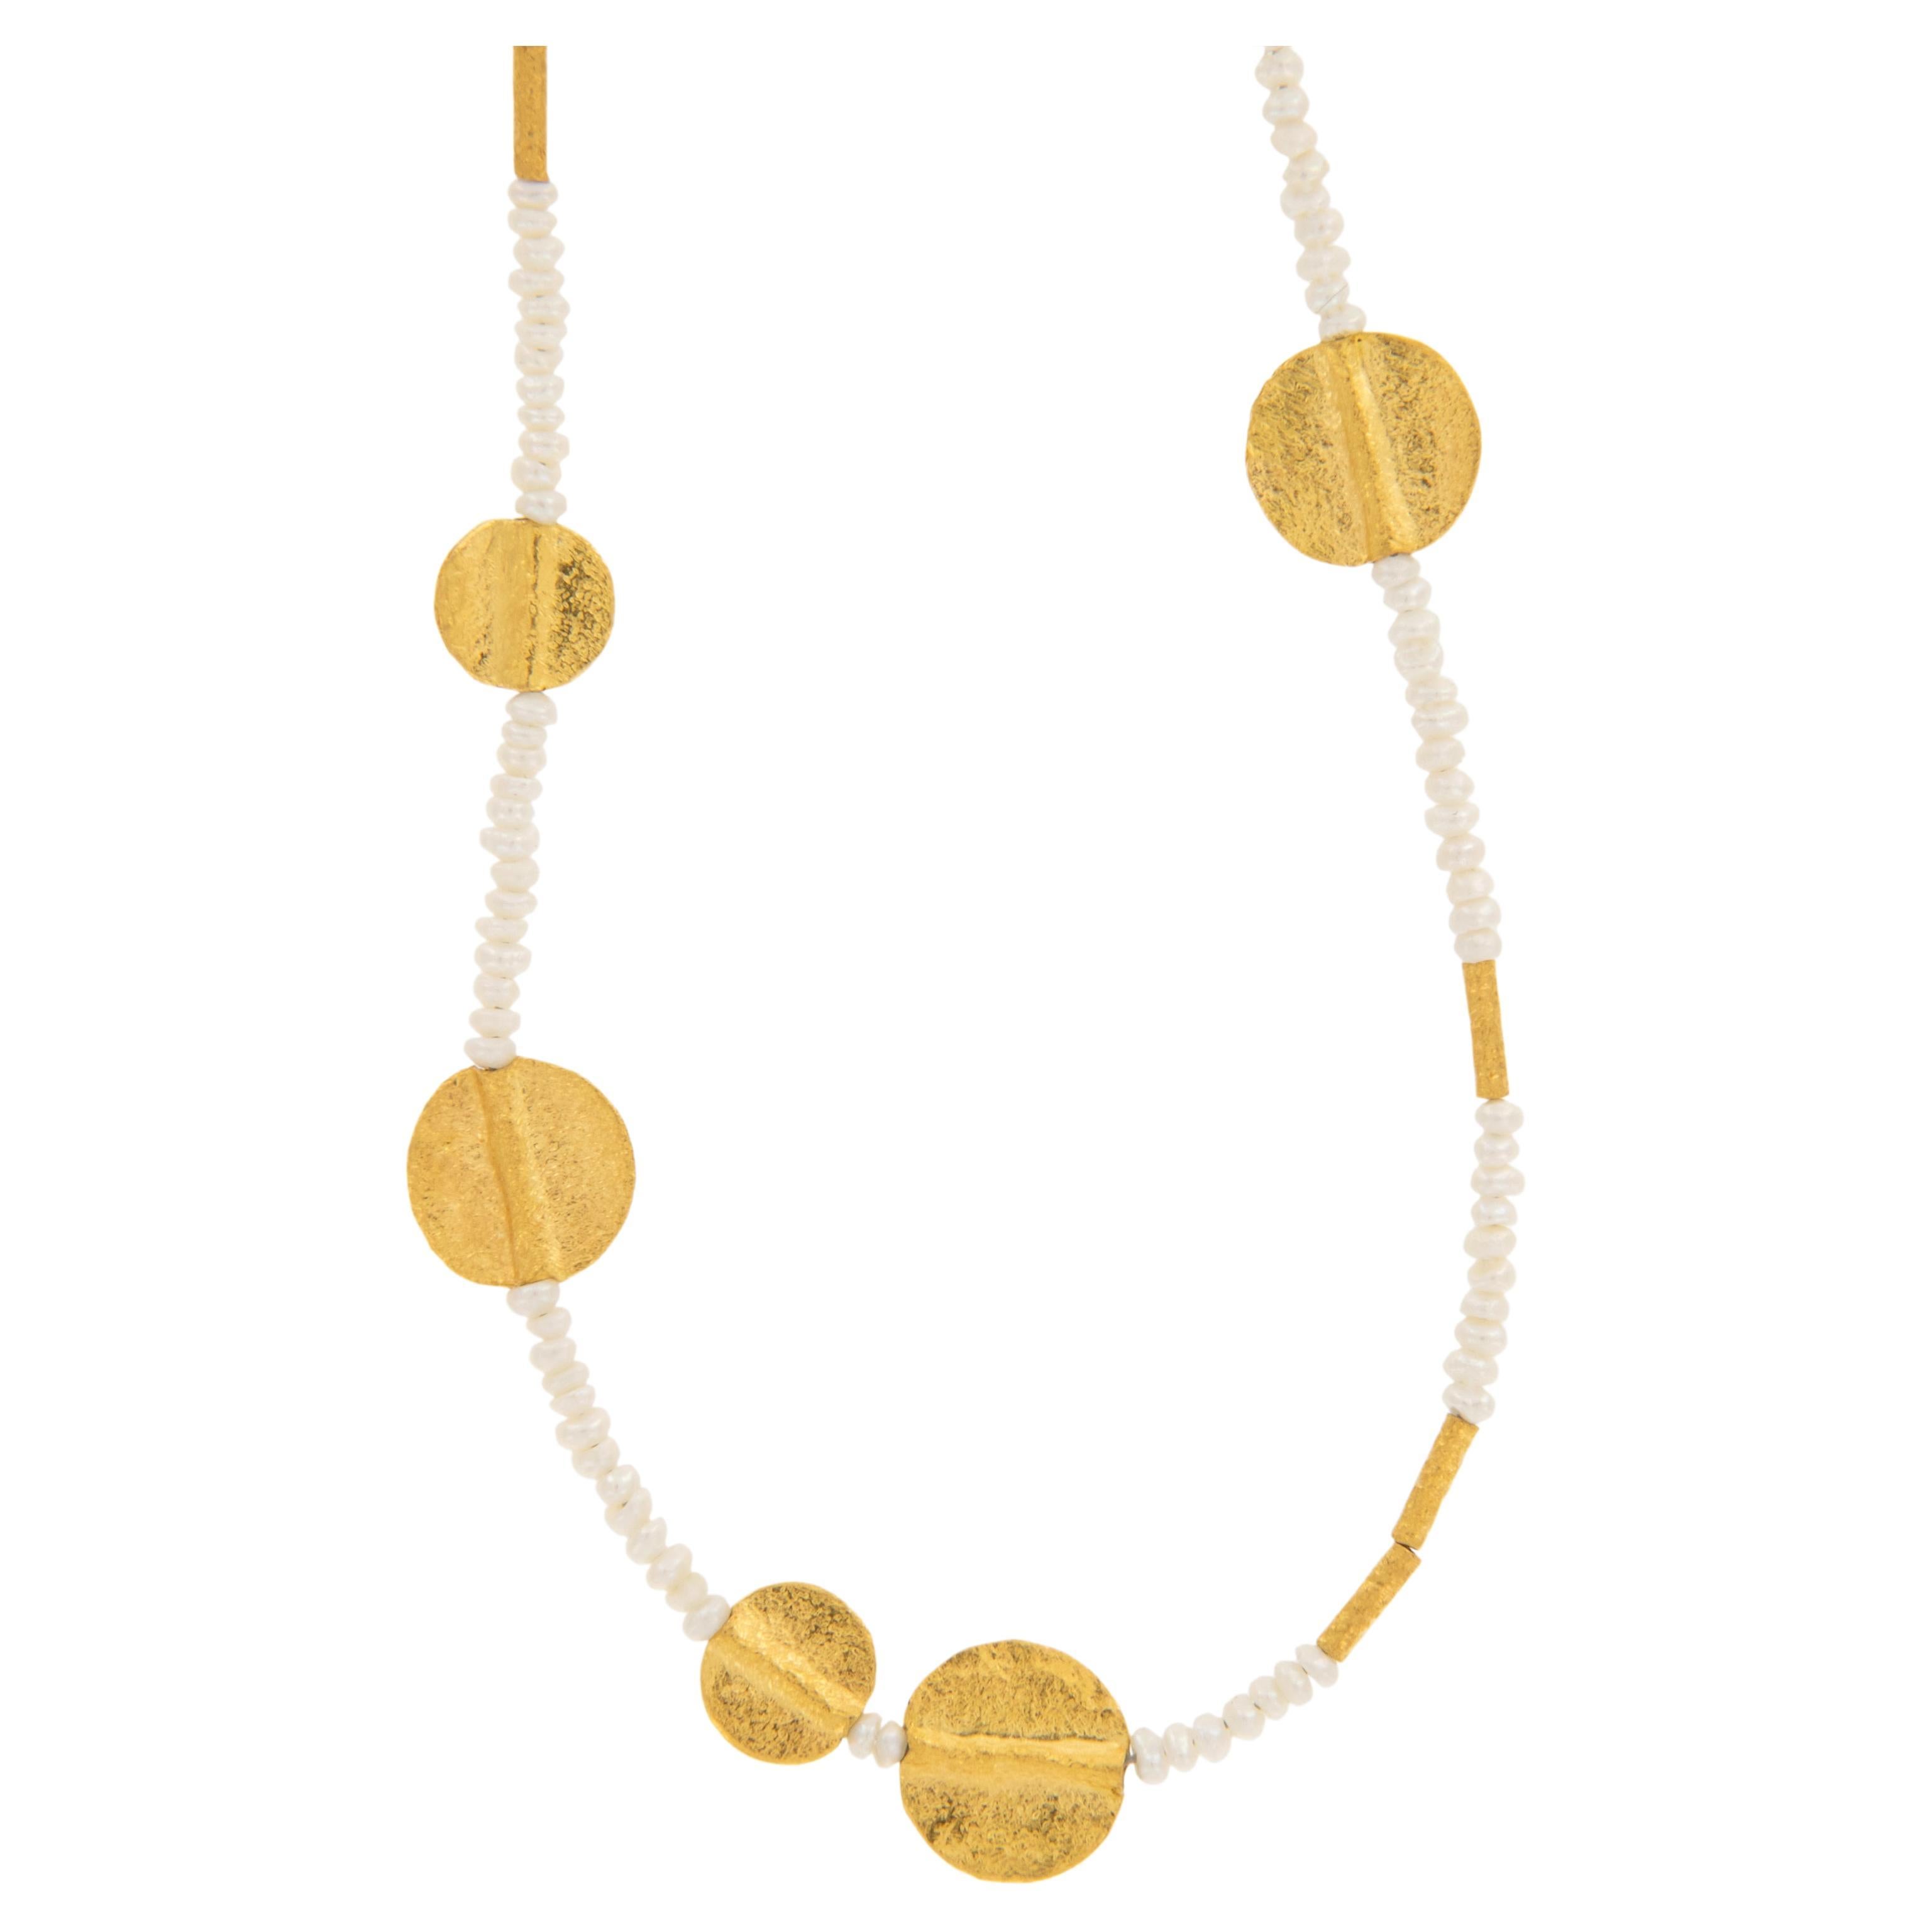 Rare collier perlé à la main en or jaune 24 carats et perles naturelles